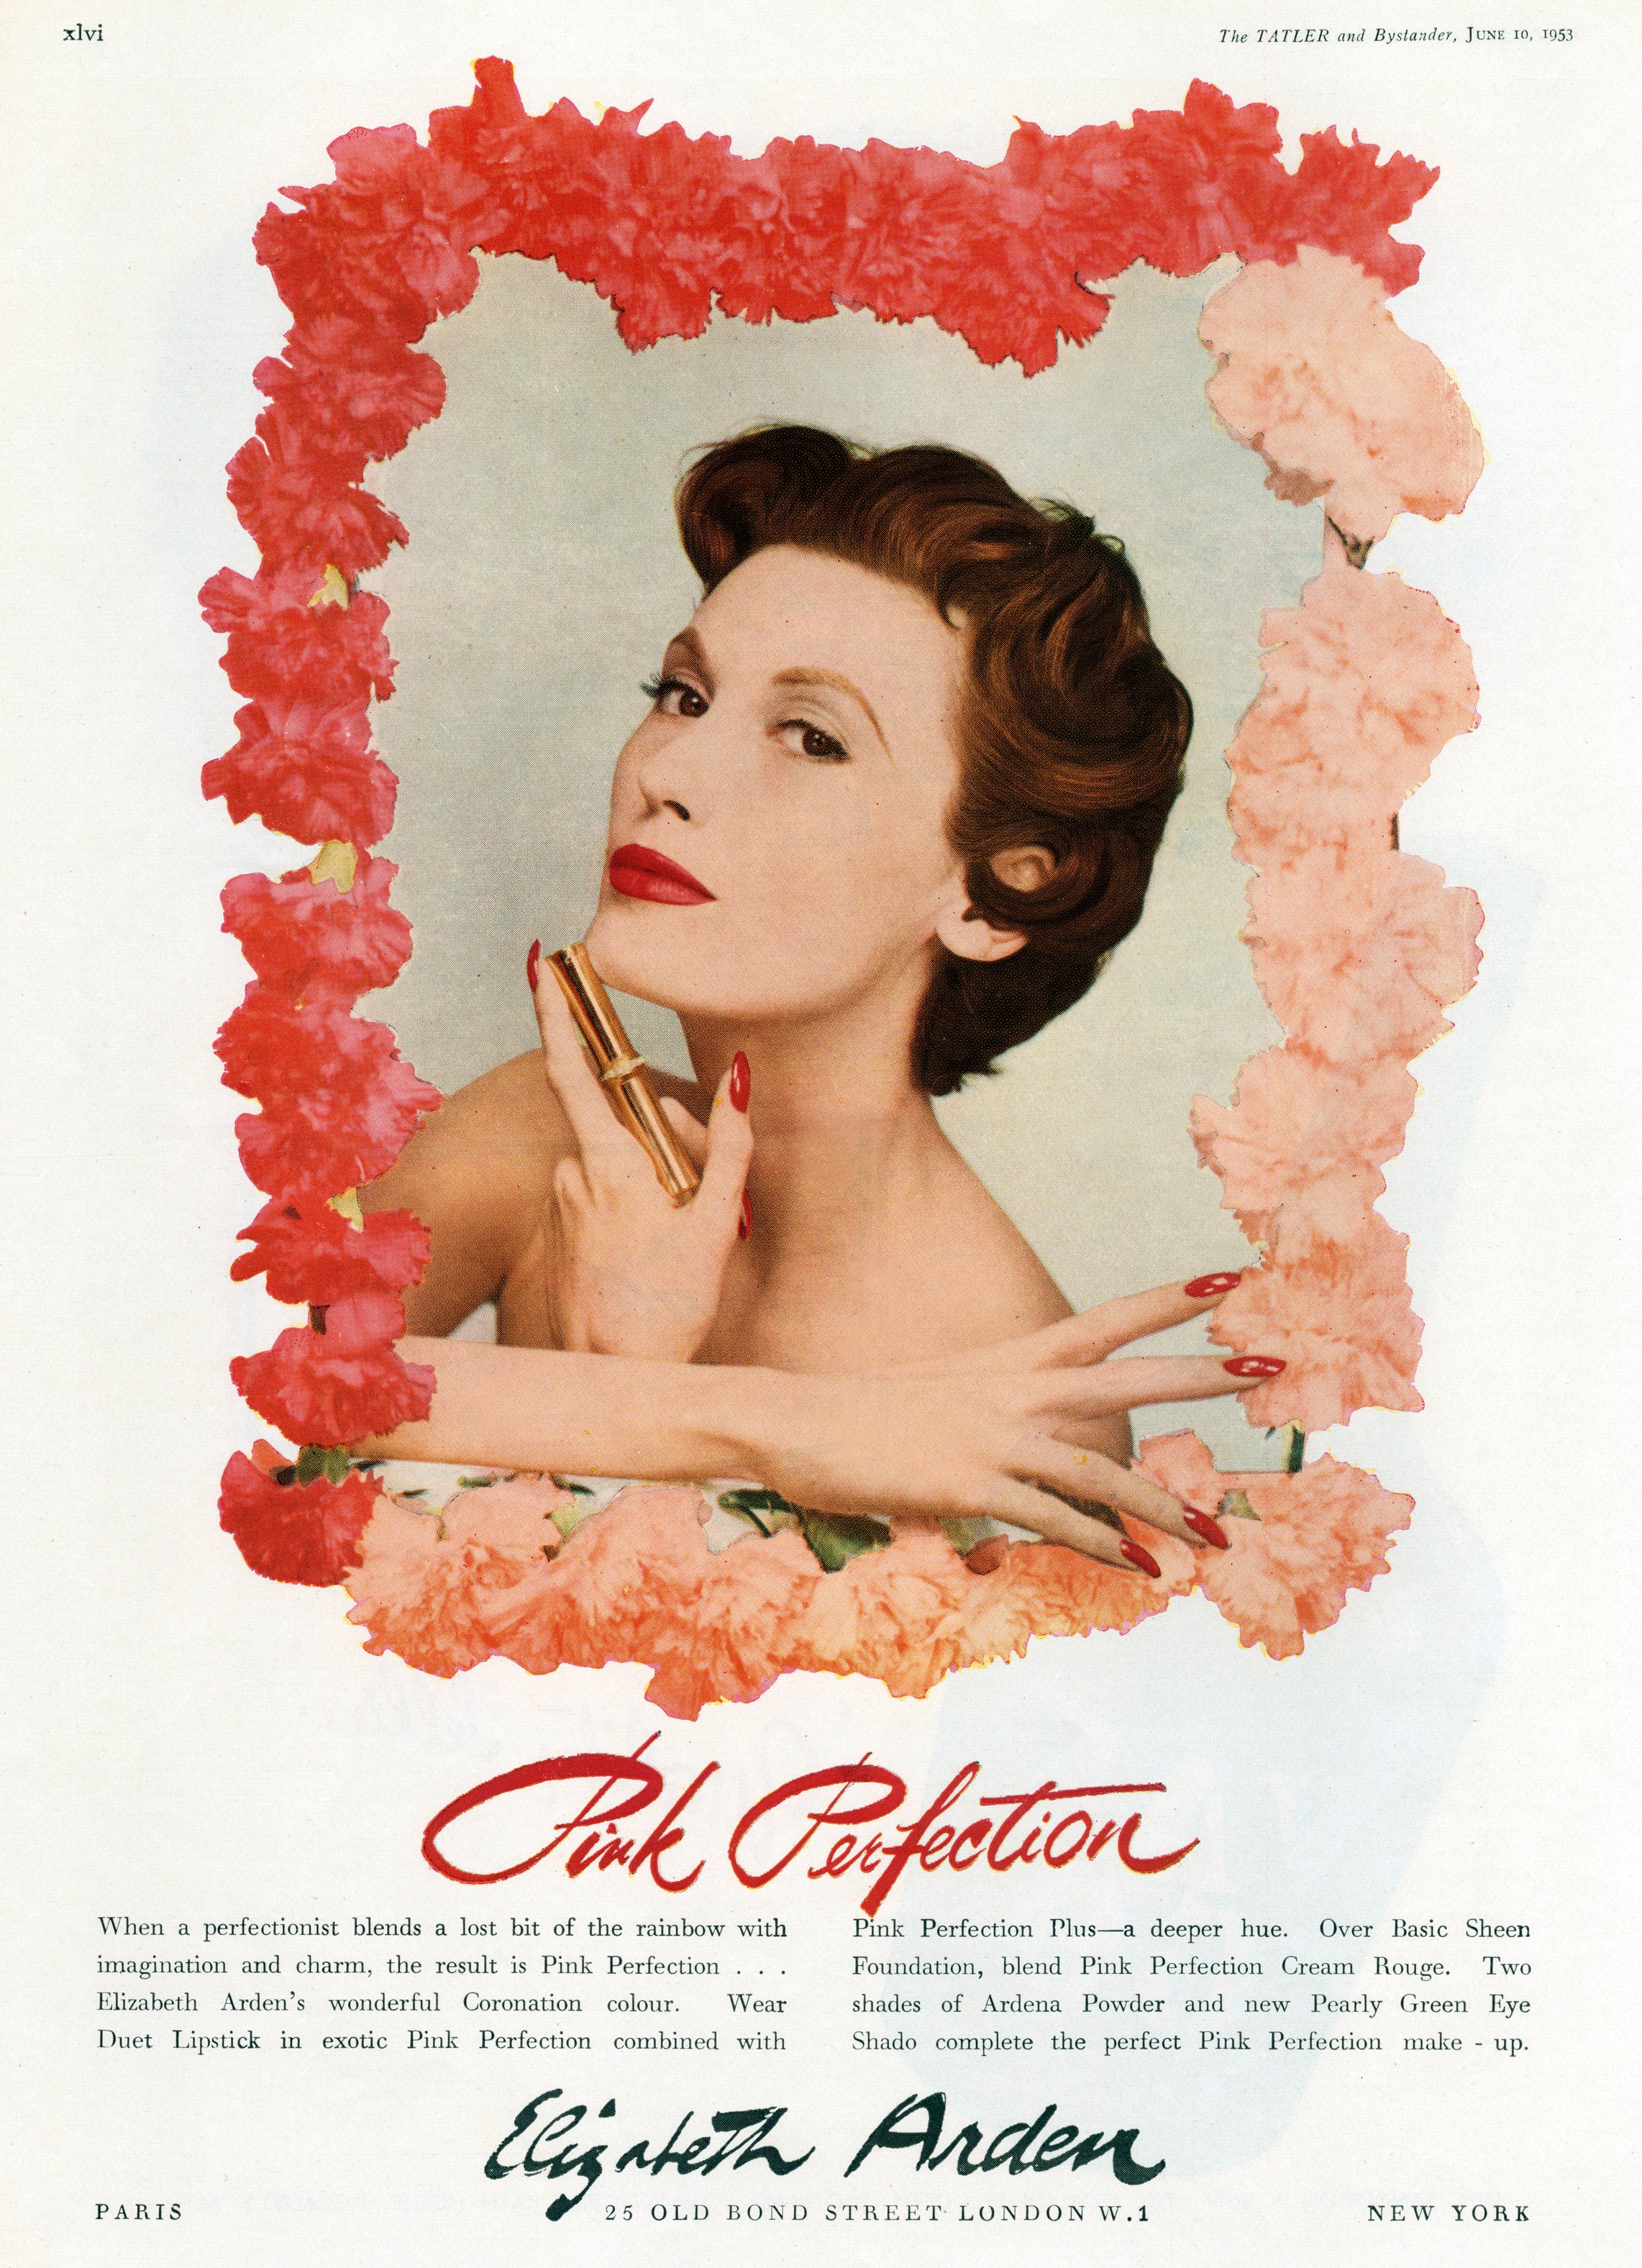 English advertisement for Elizabeth Arden lipstick, june 1943